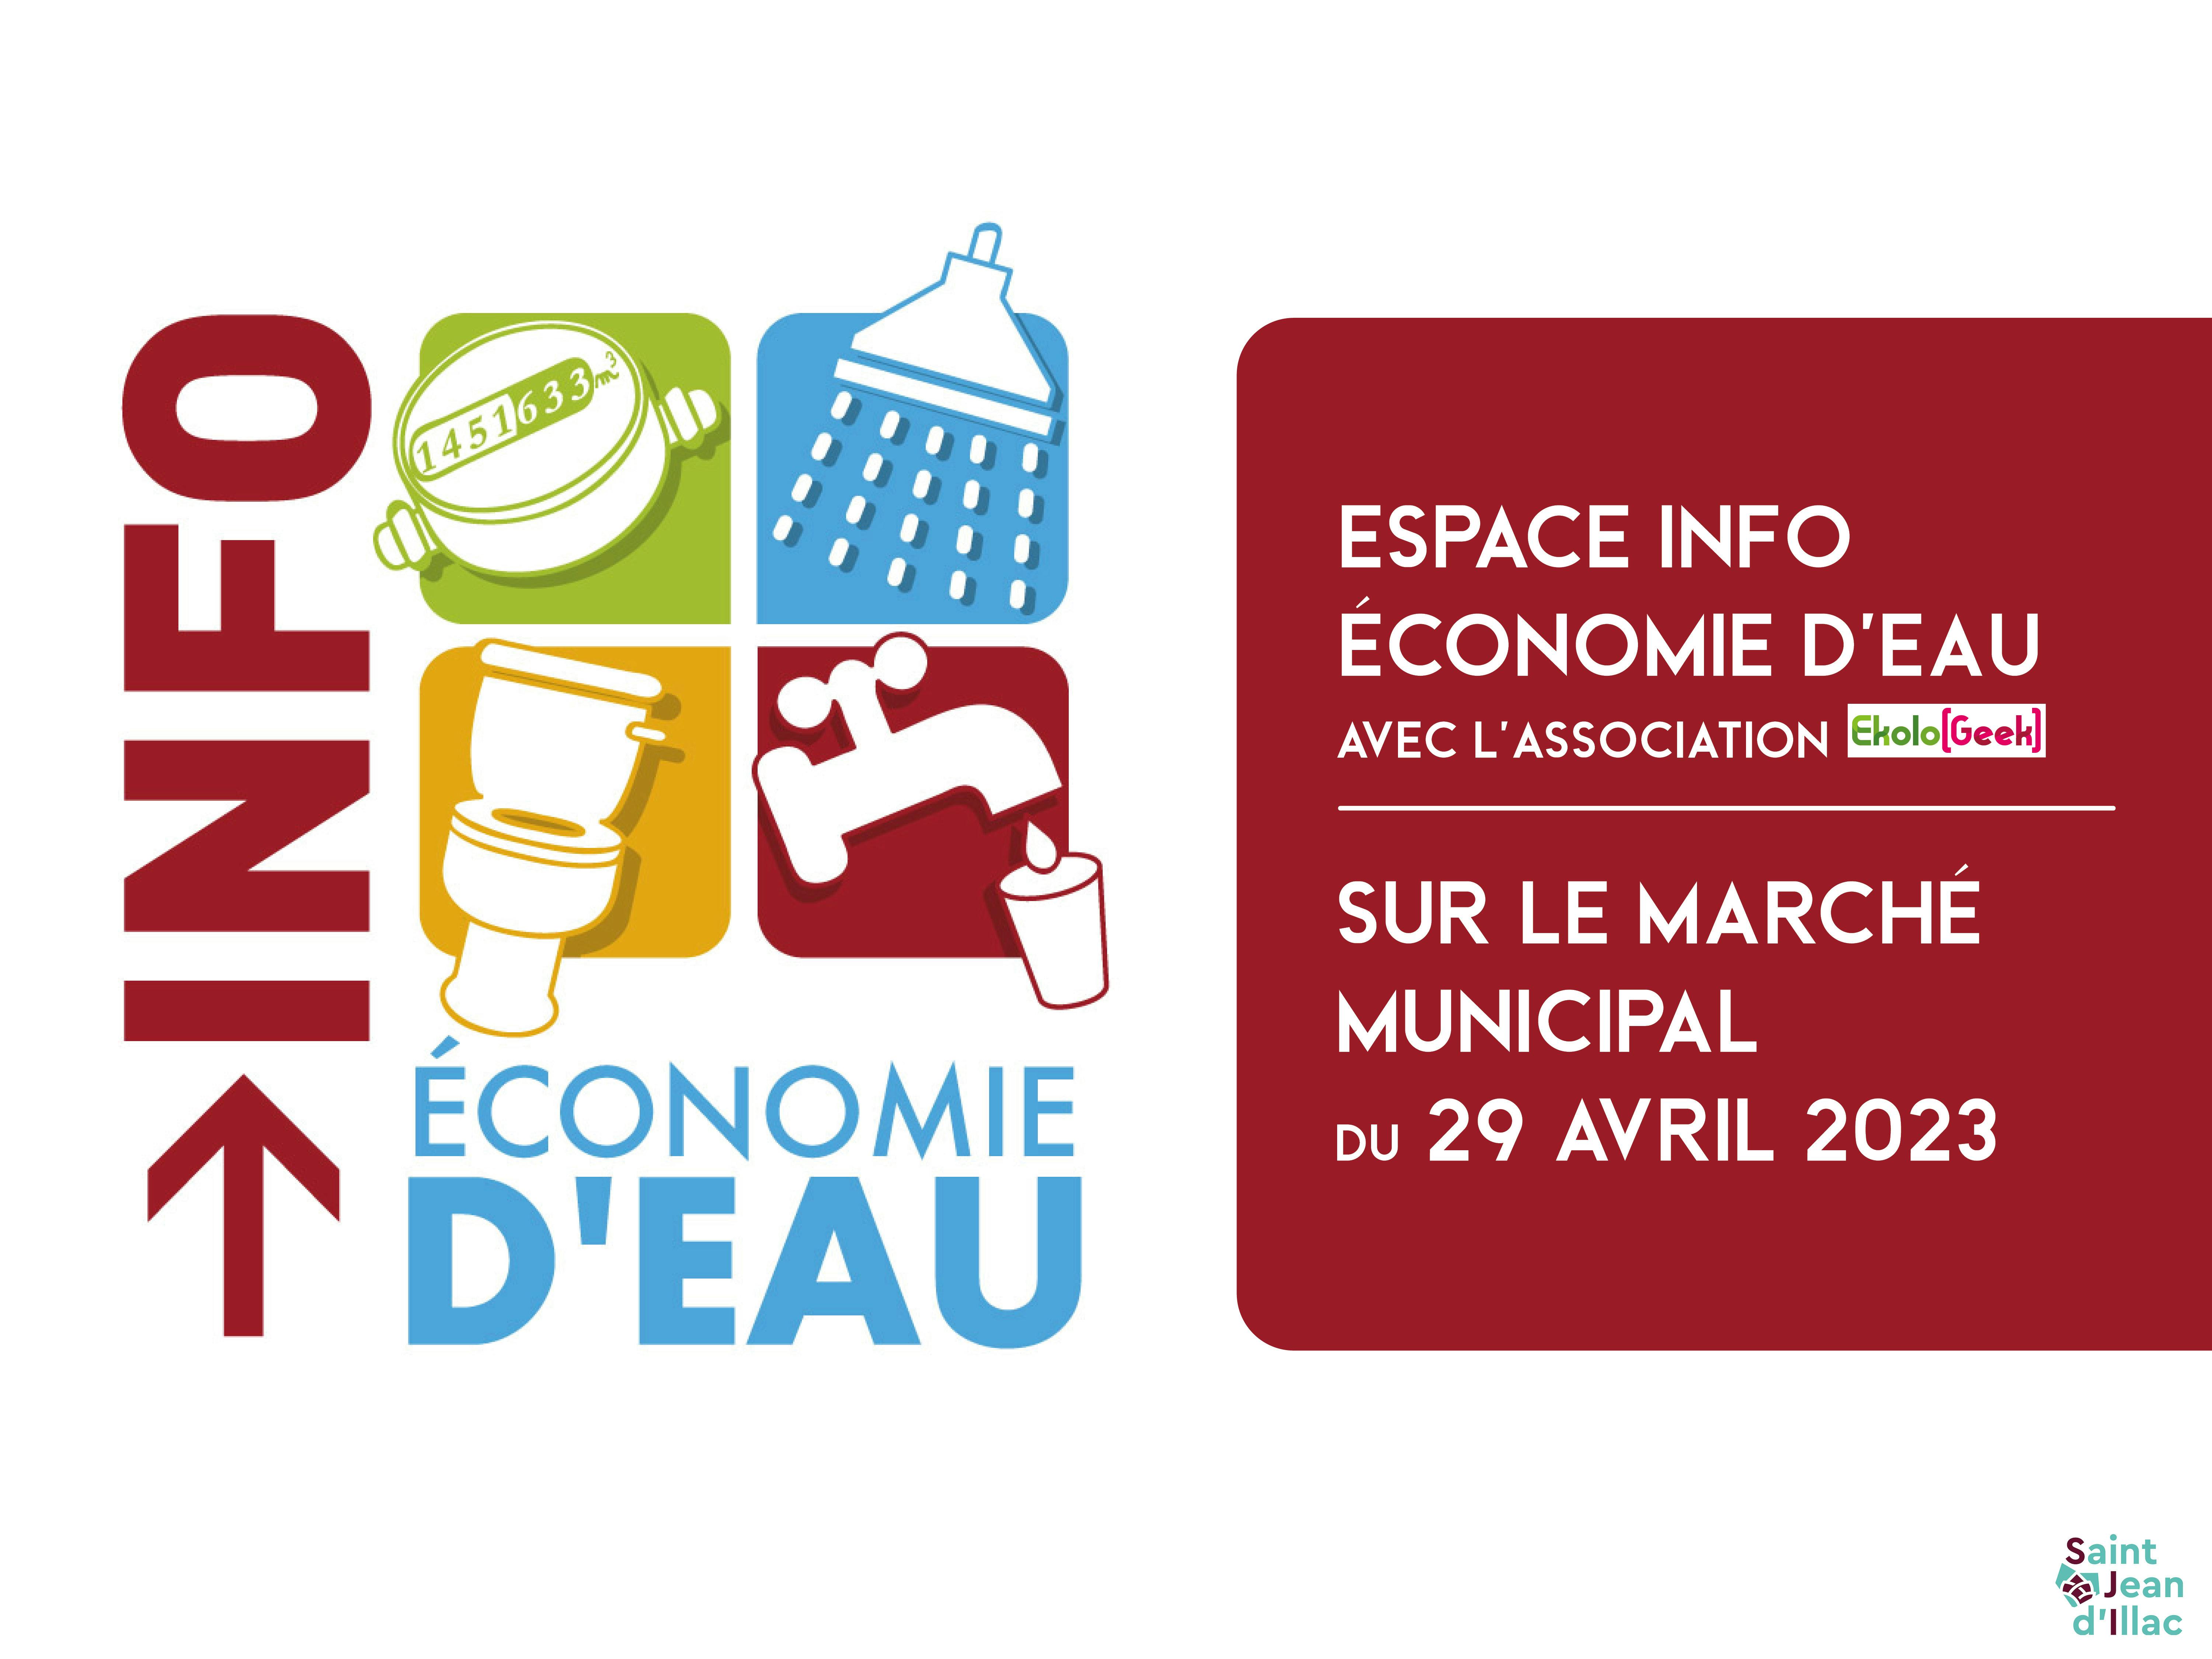 Marché municipal - Espace Info Économie d'Eau